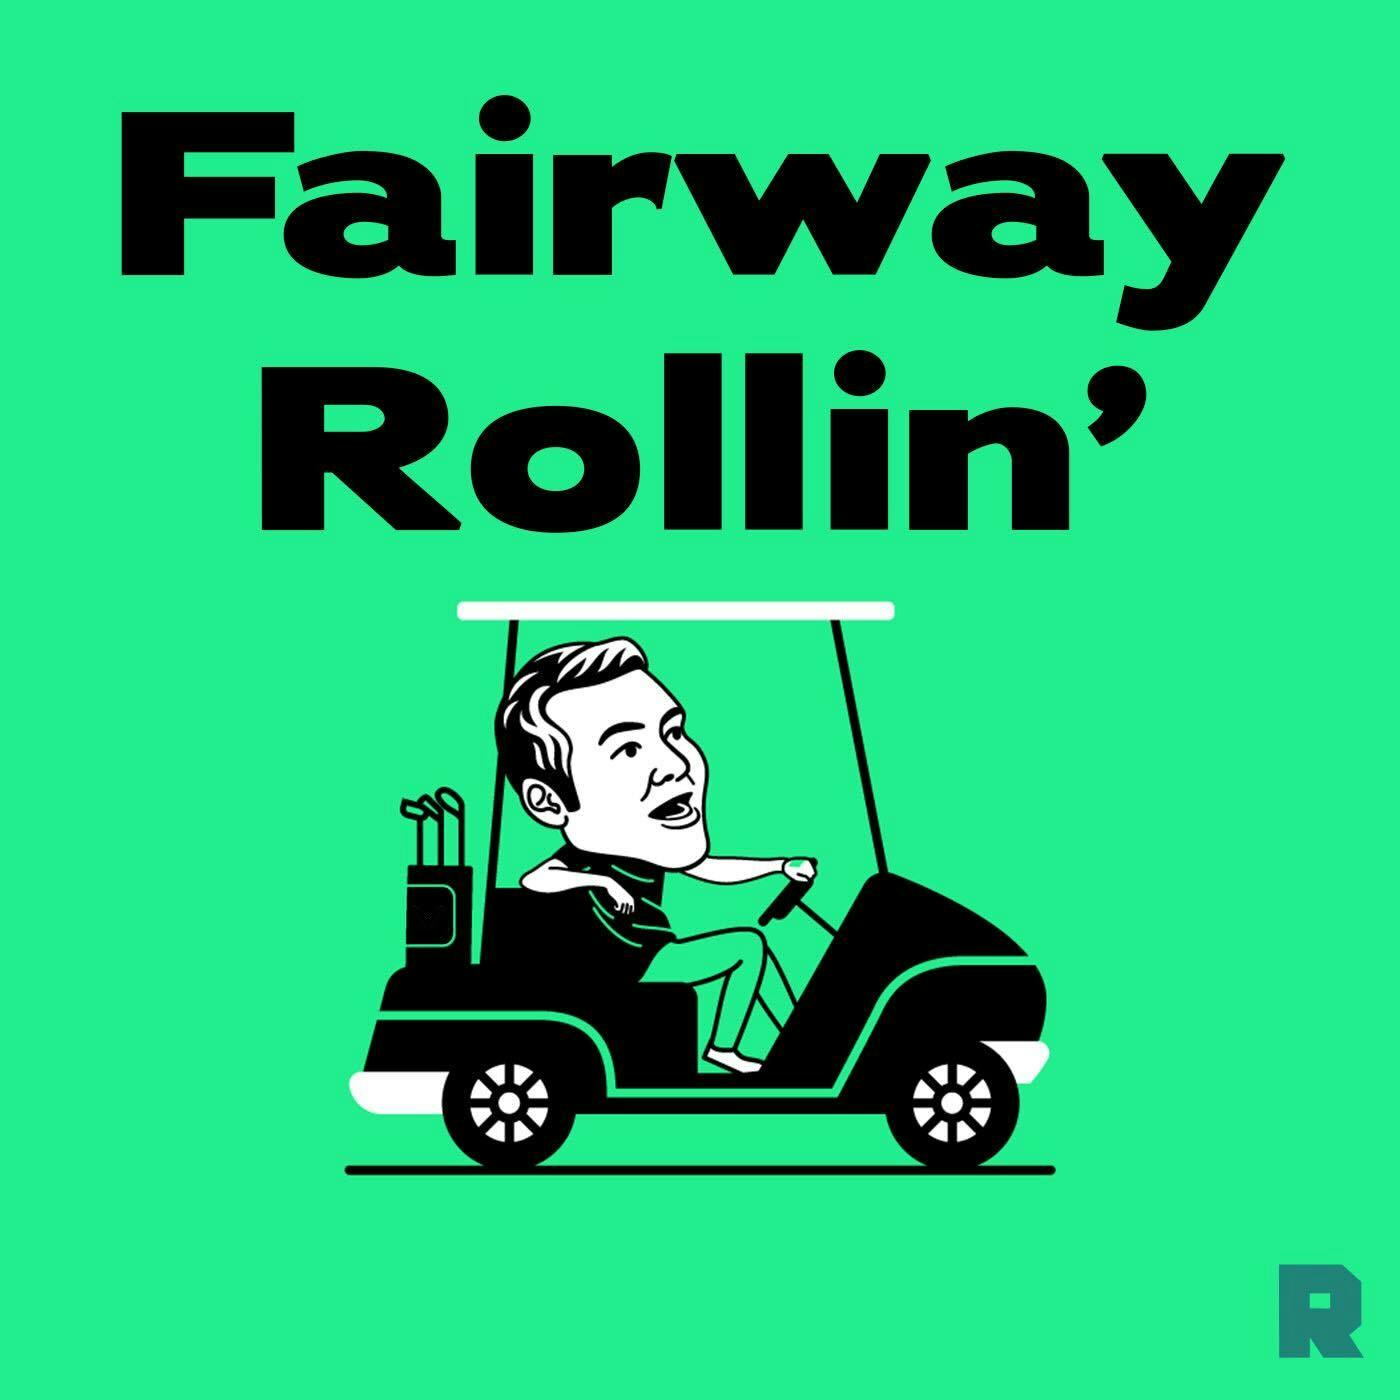 Fairway Rollin'